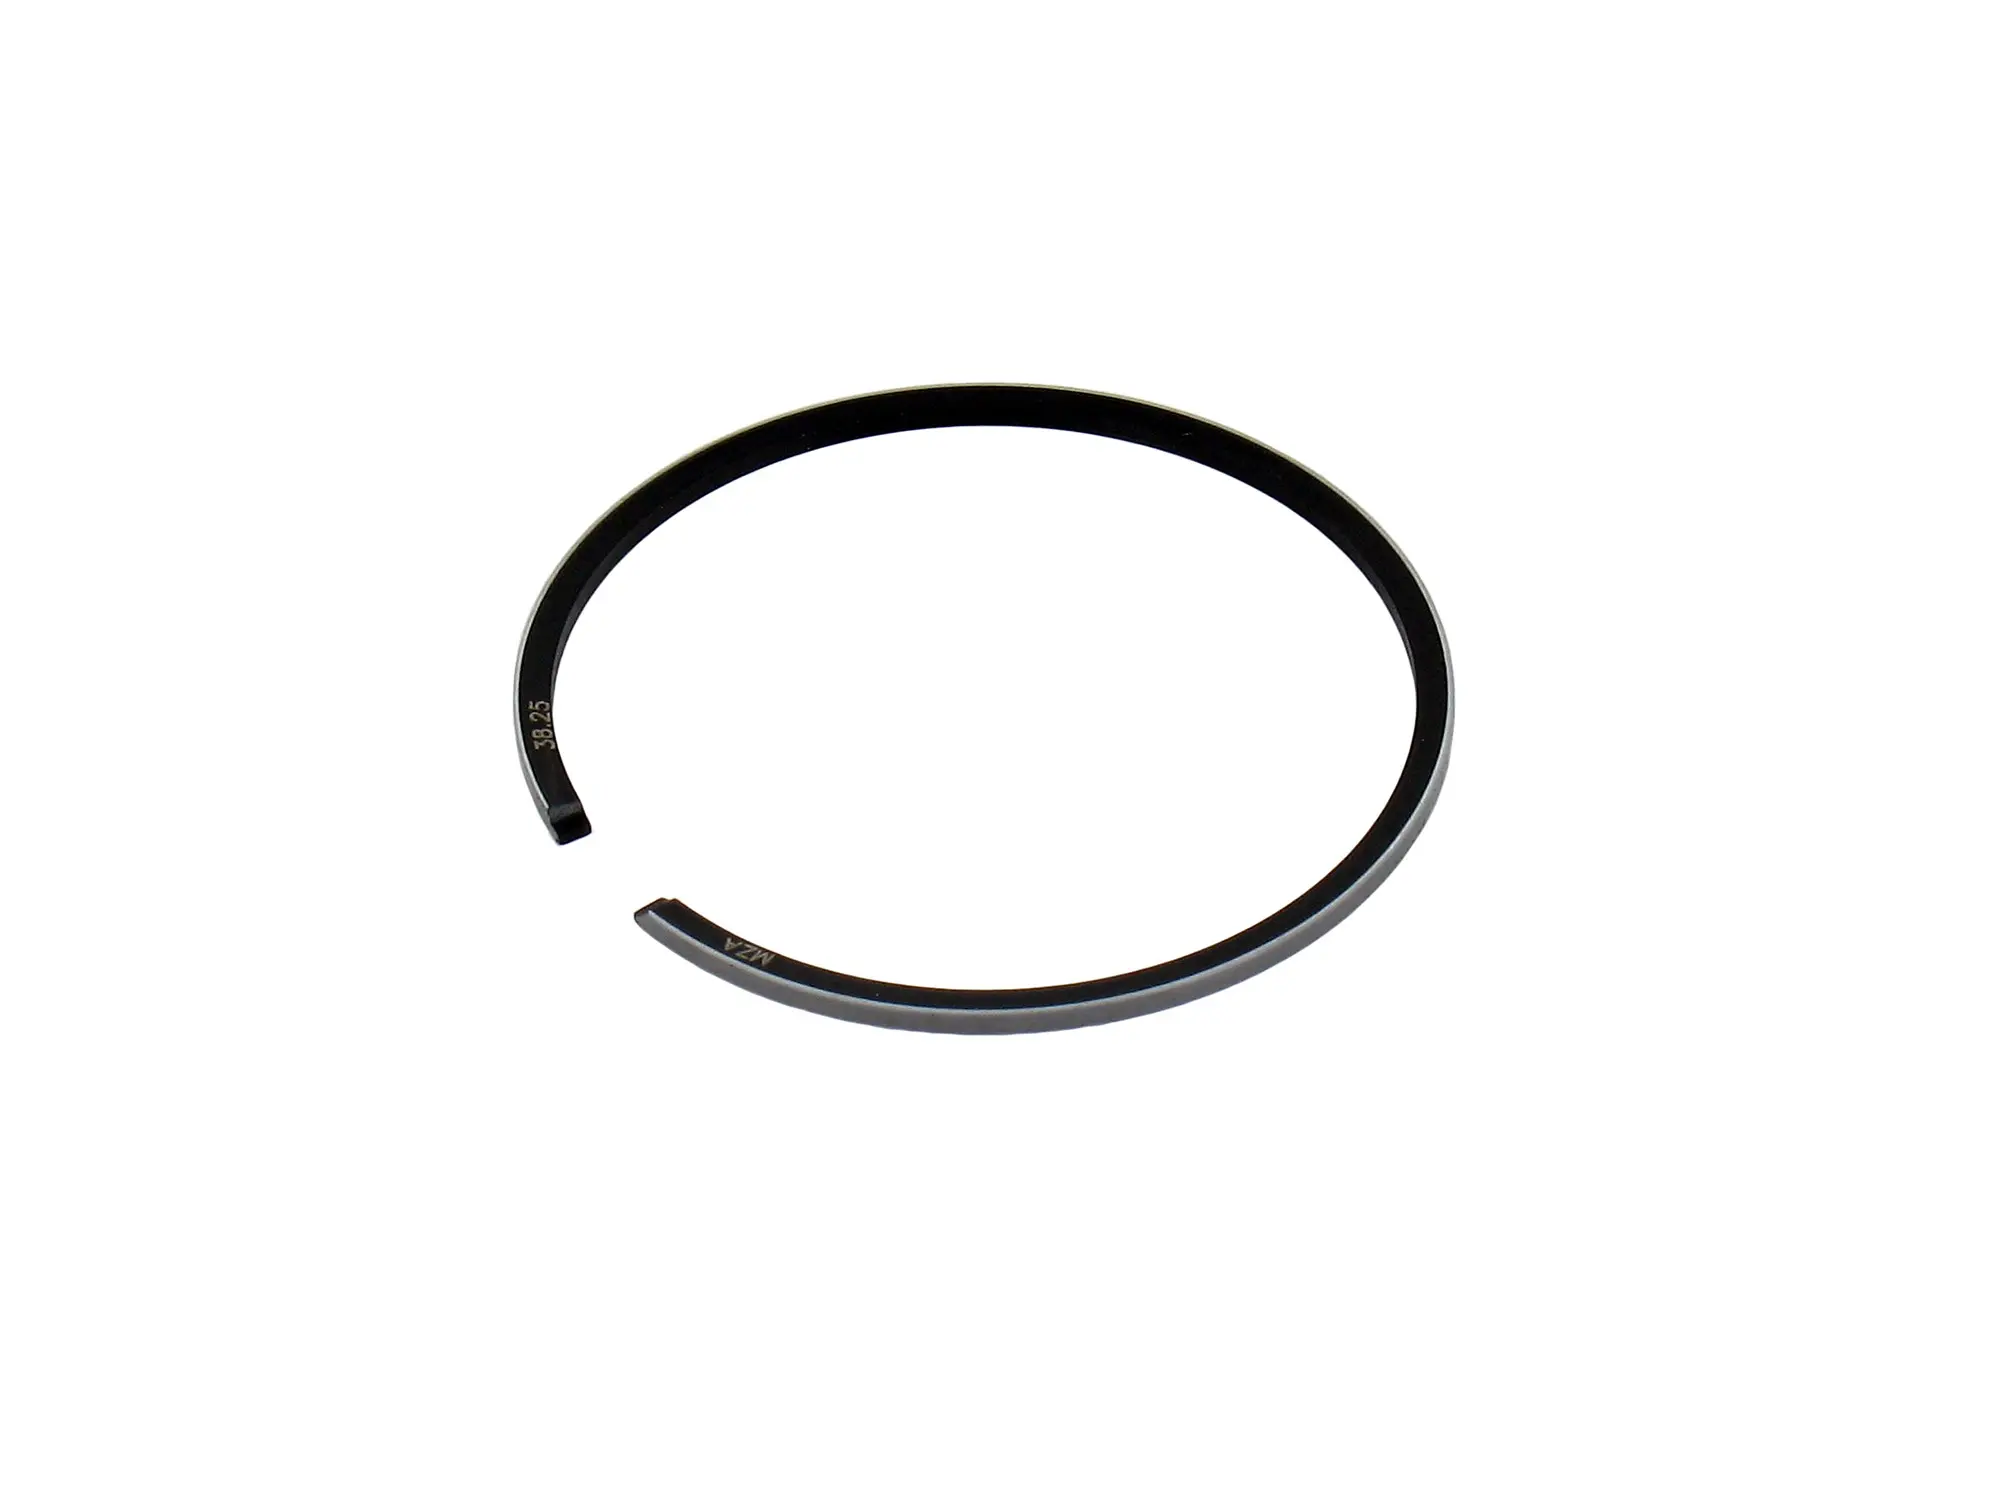 Kolbenring Ø38,25 x 1,2 mm für 1-Ring-Tuningkolben (Ø38,22mm) - MZA, Art.-Nr.: 10039010 - Bild 1